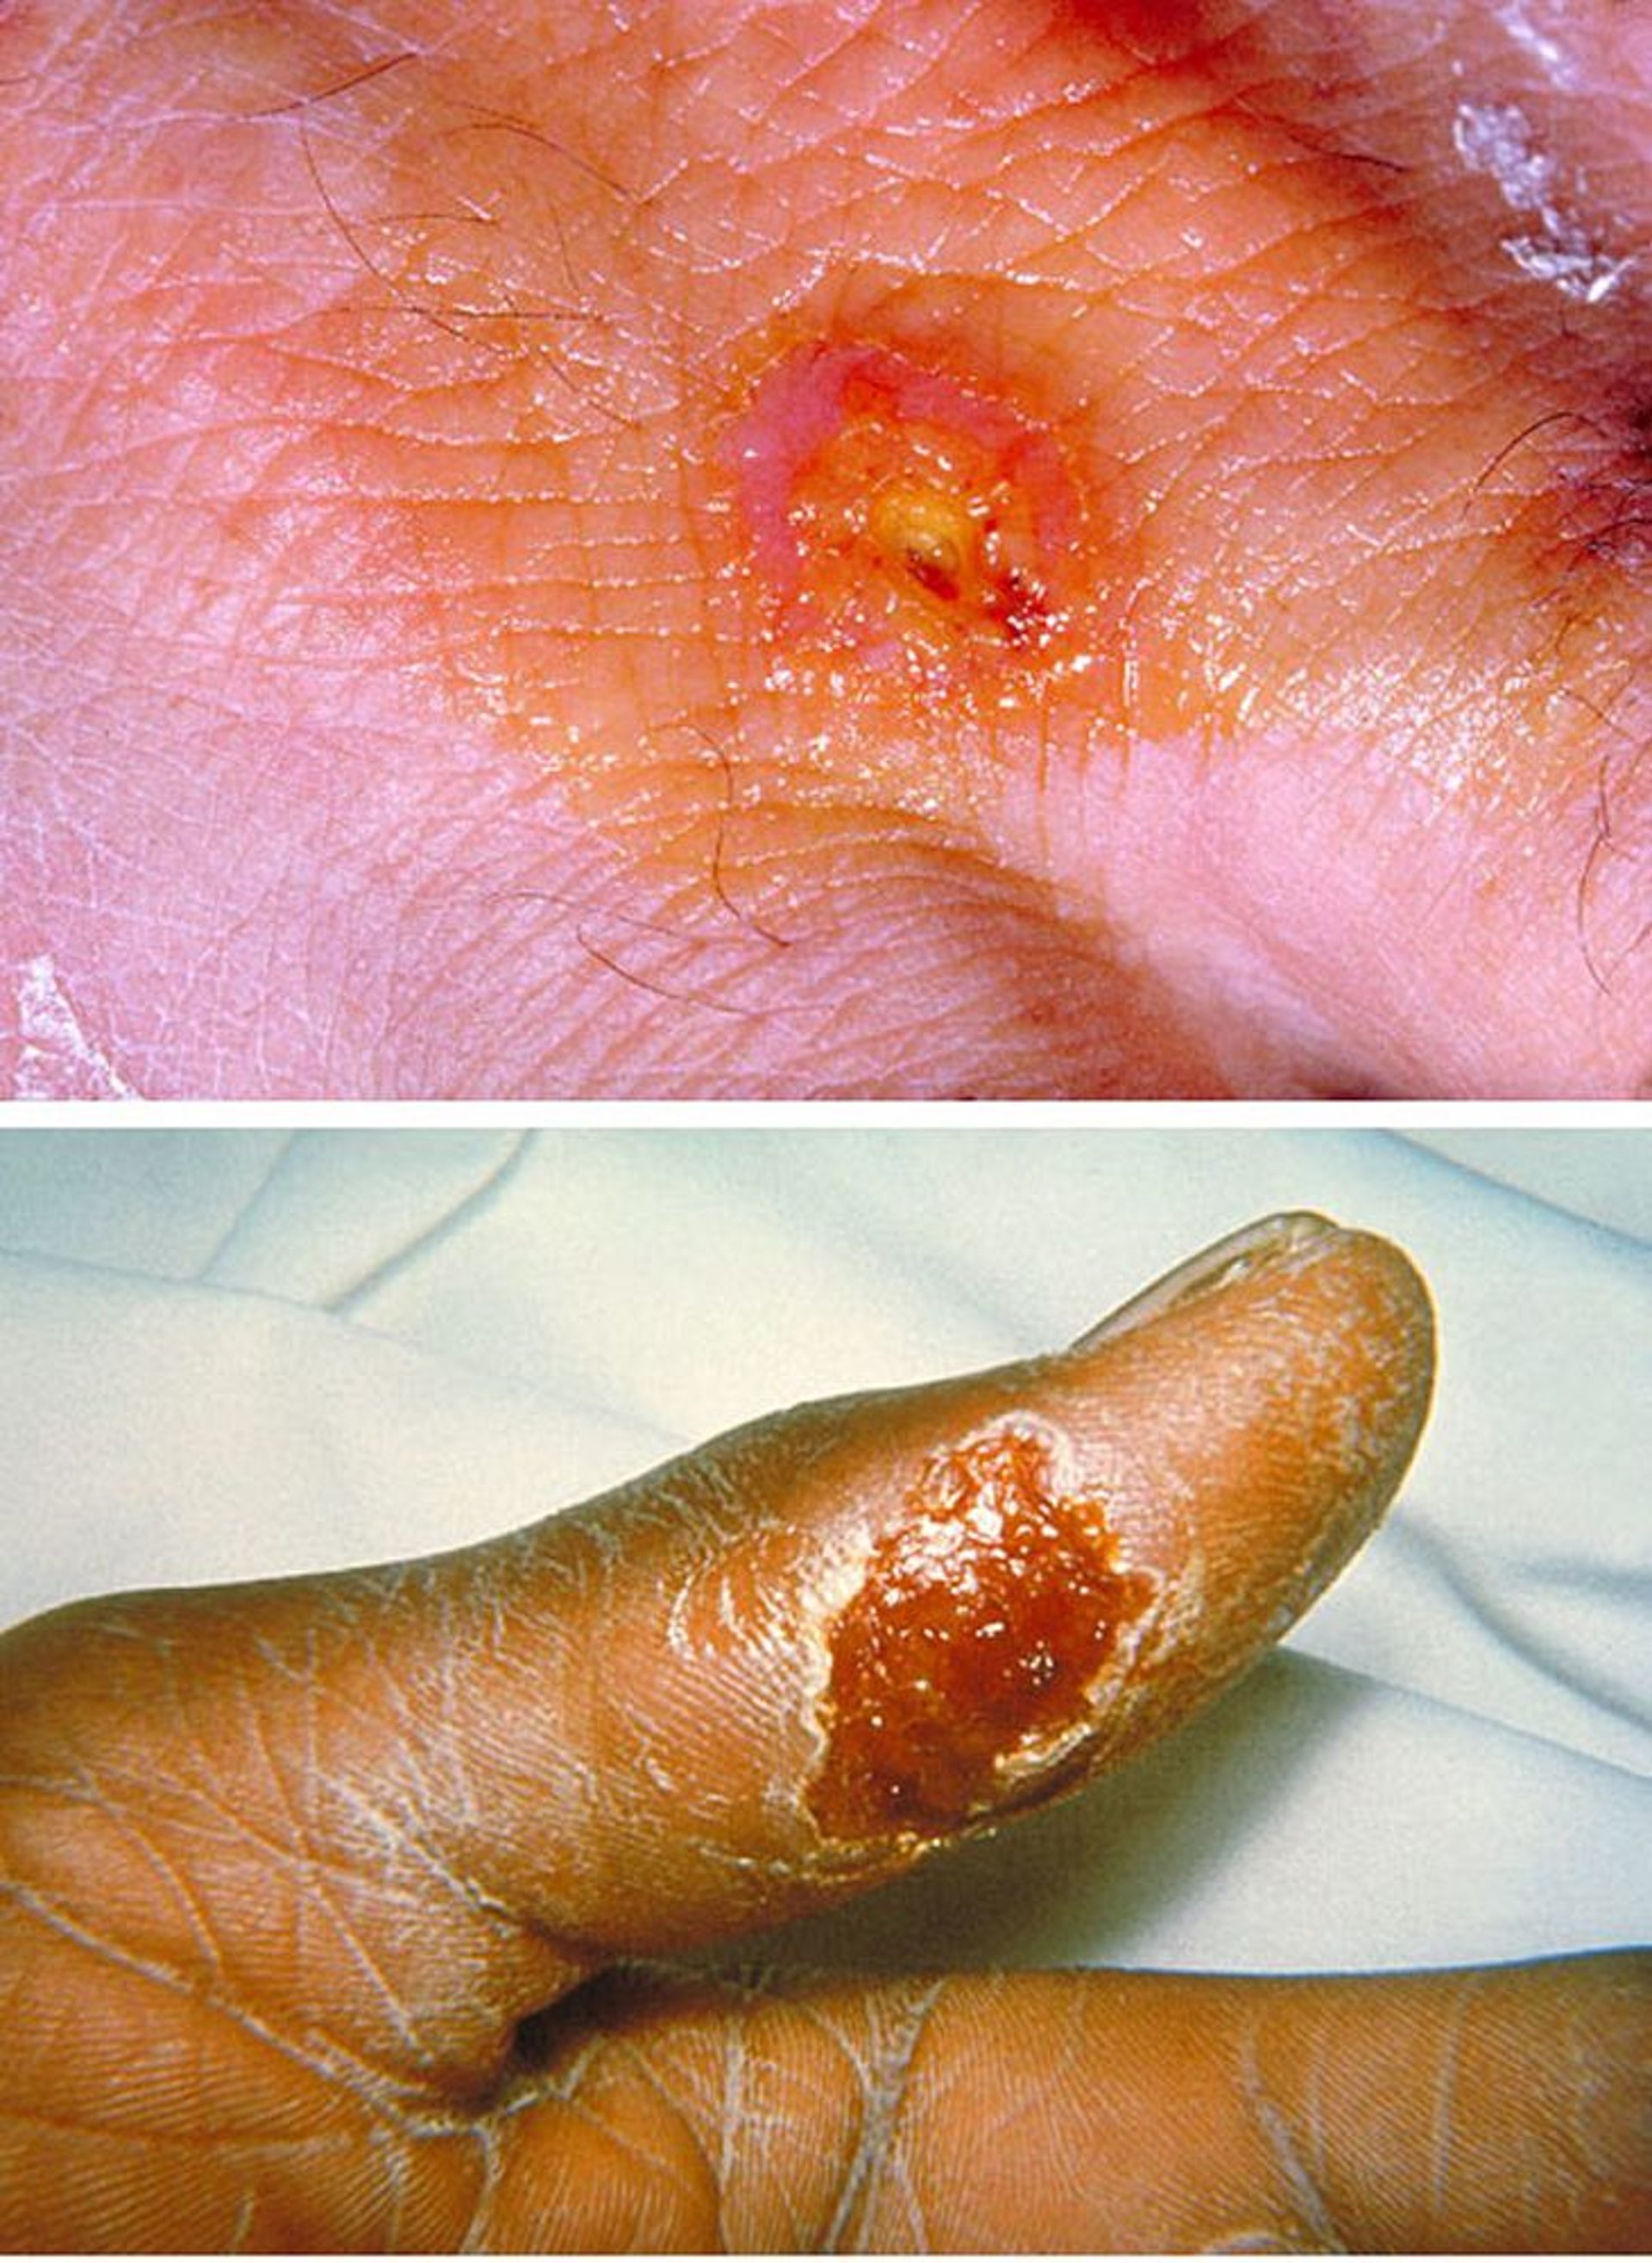 Llagas en la piel causadas por tularemia